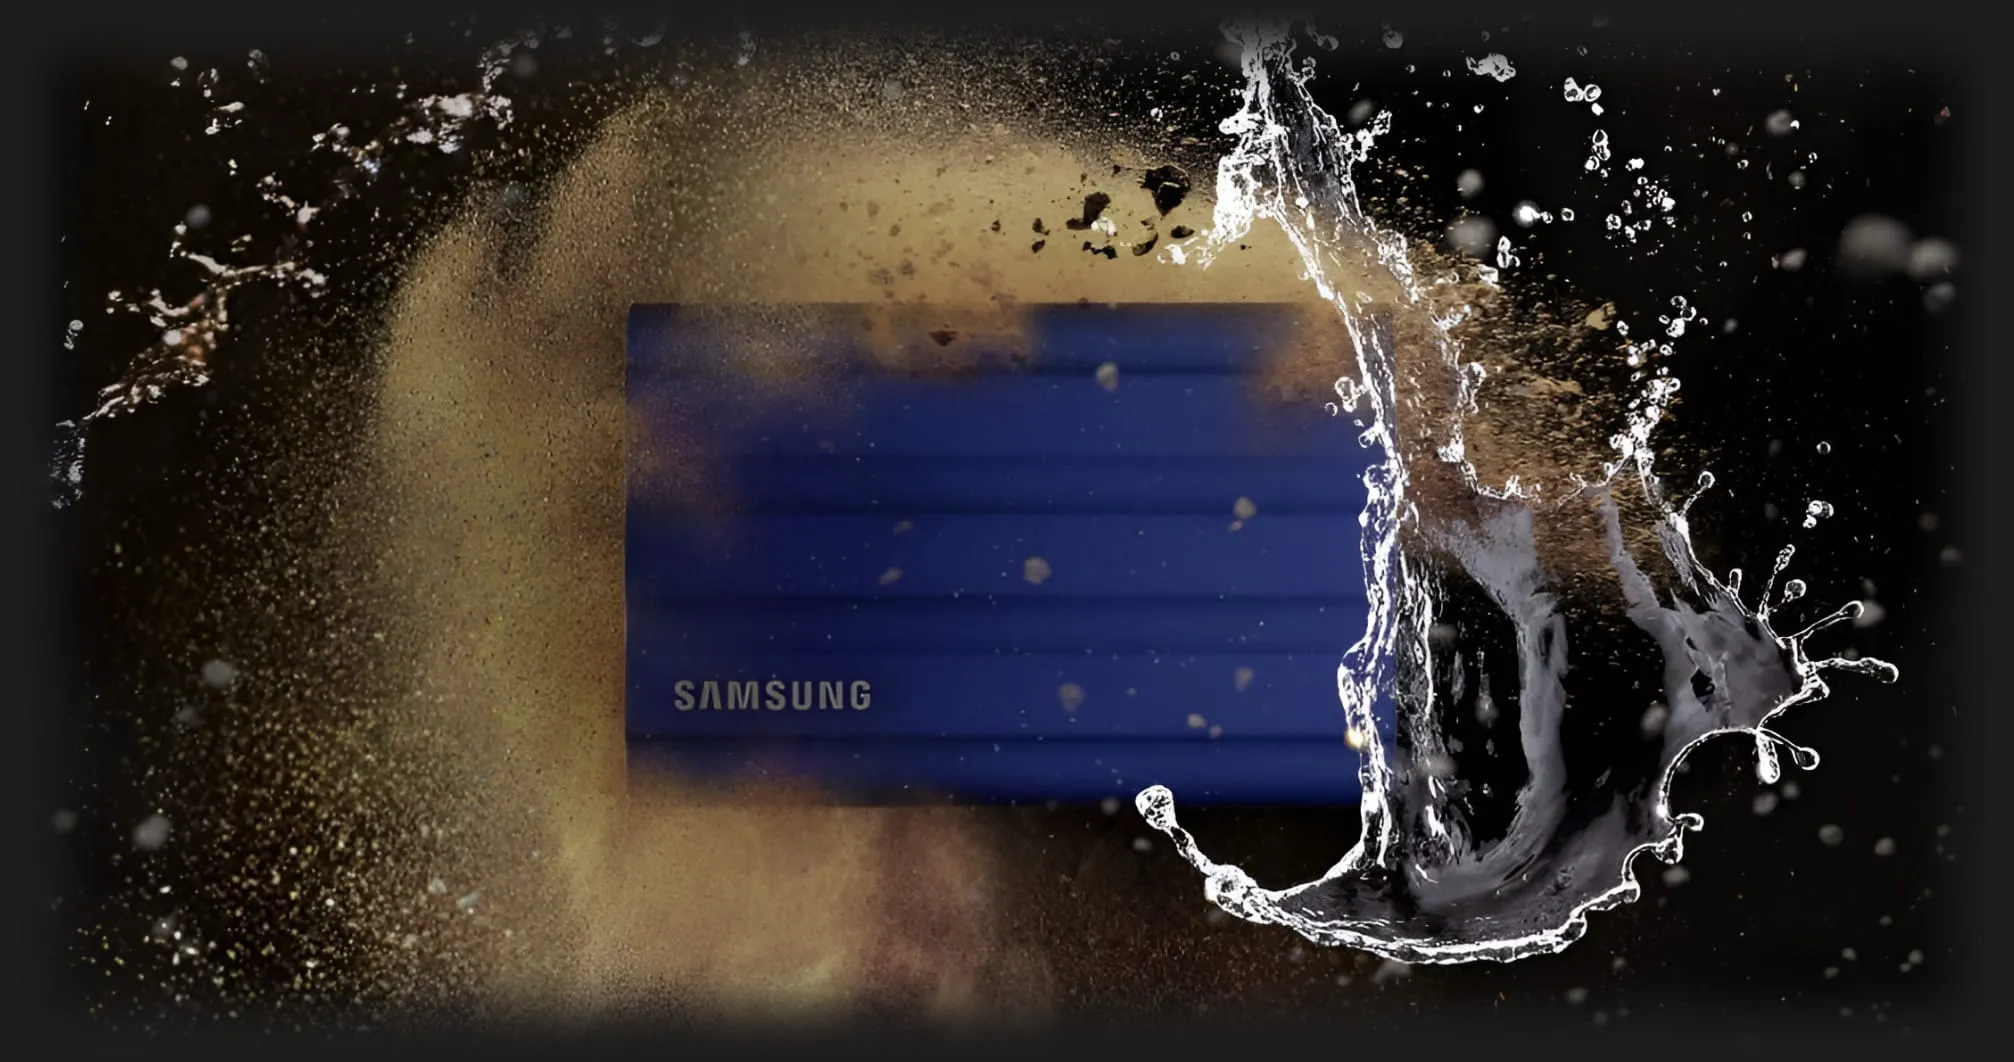 Внешний SSD-накопитель Samsung T7 Shield 2TB (Blue)